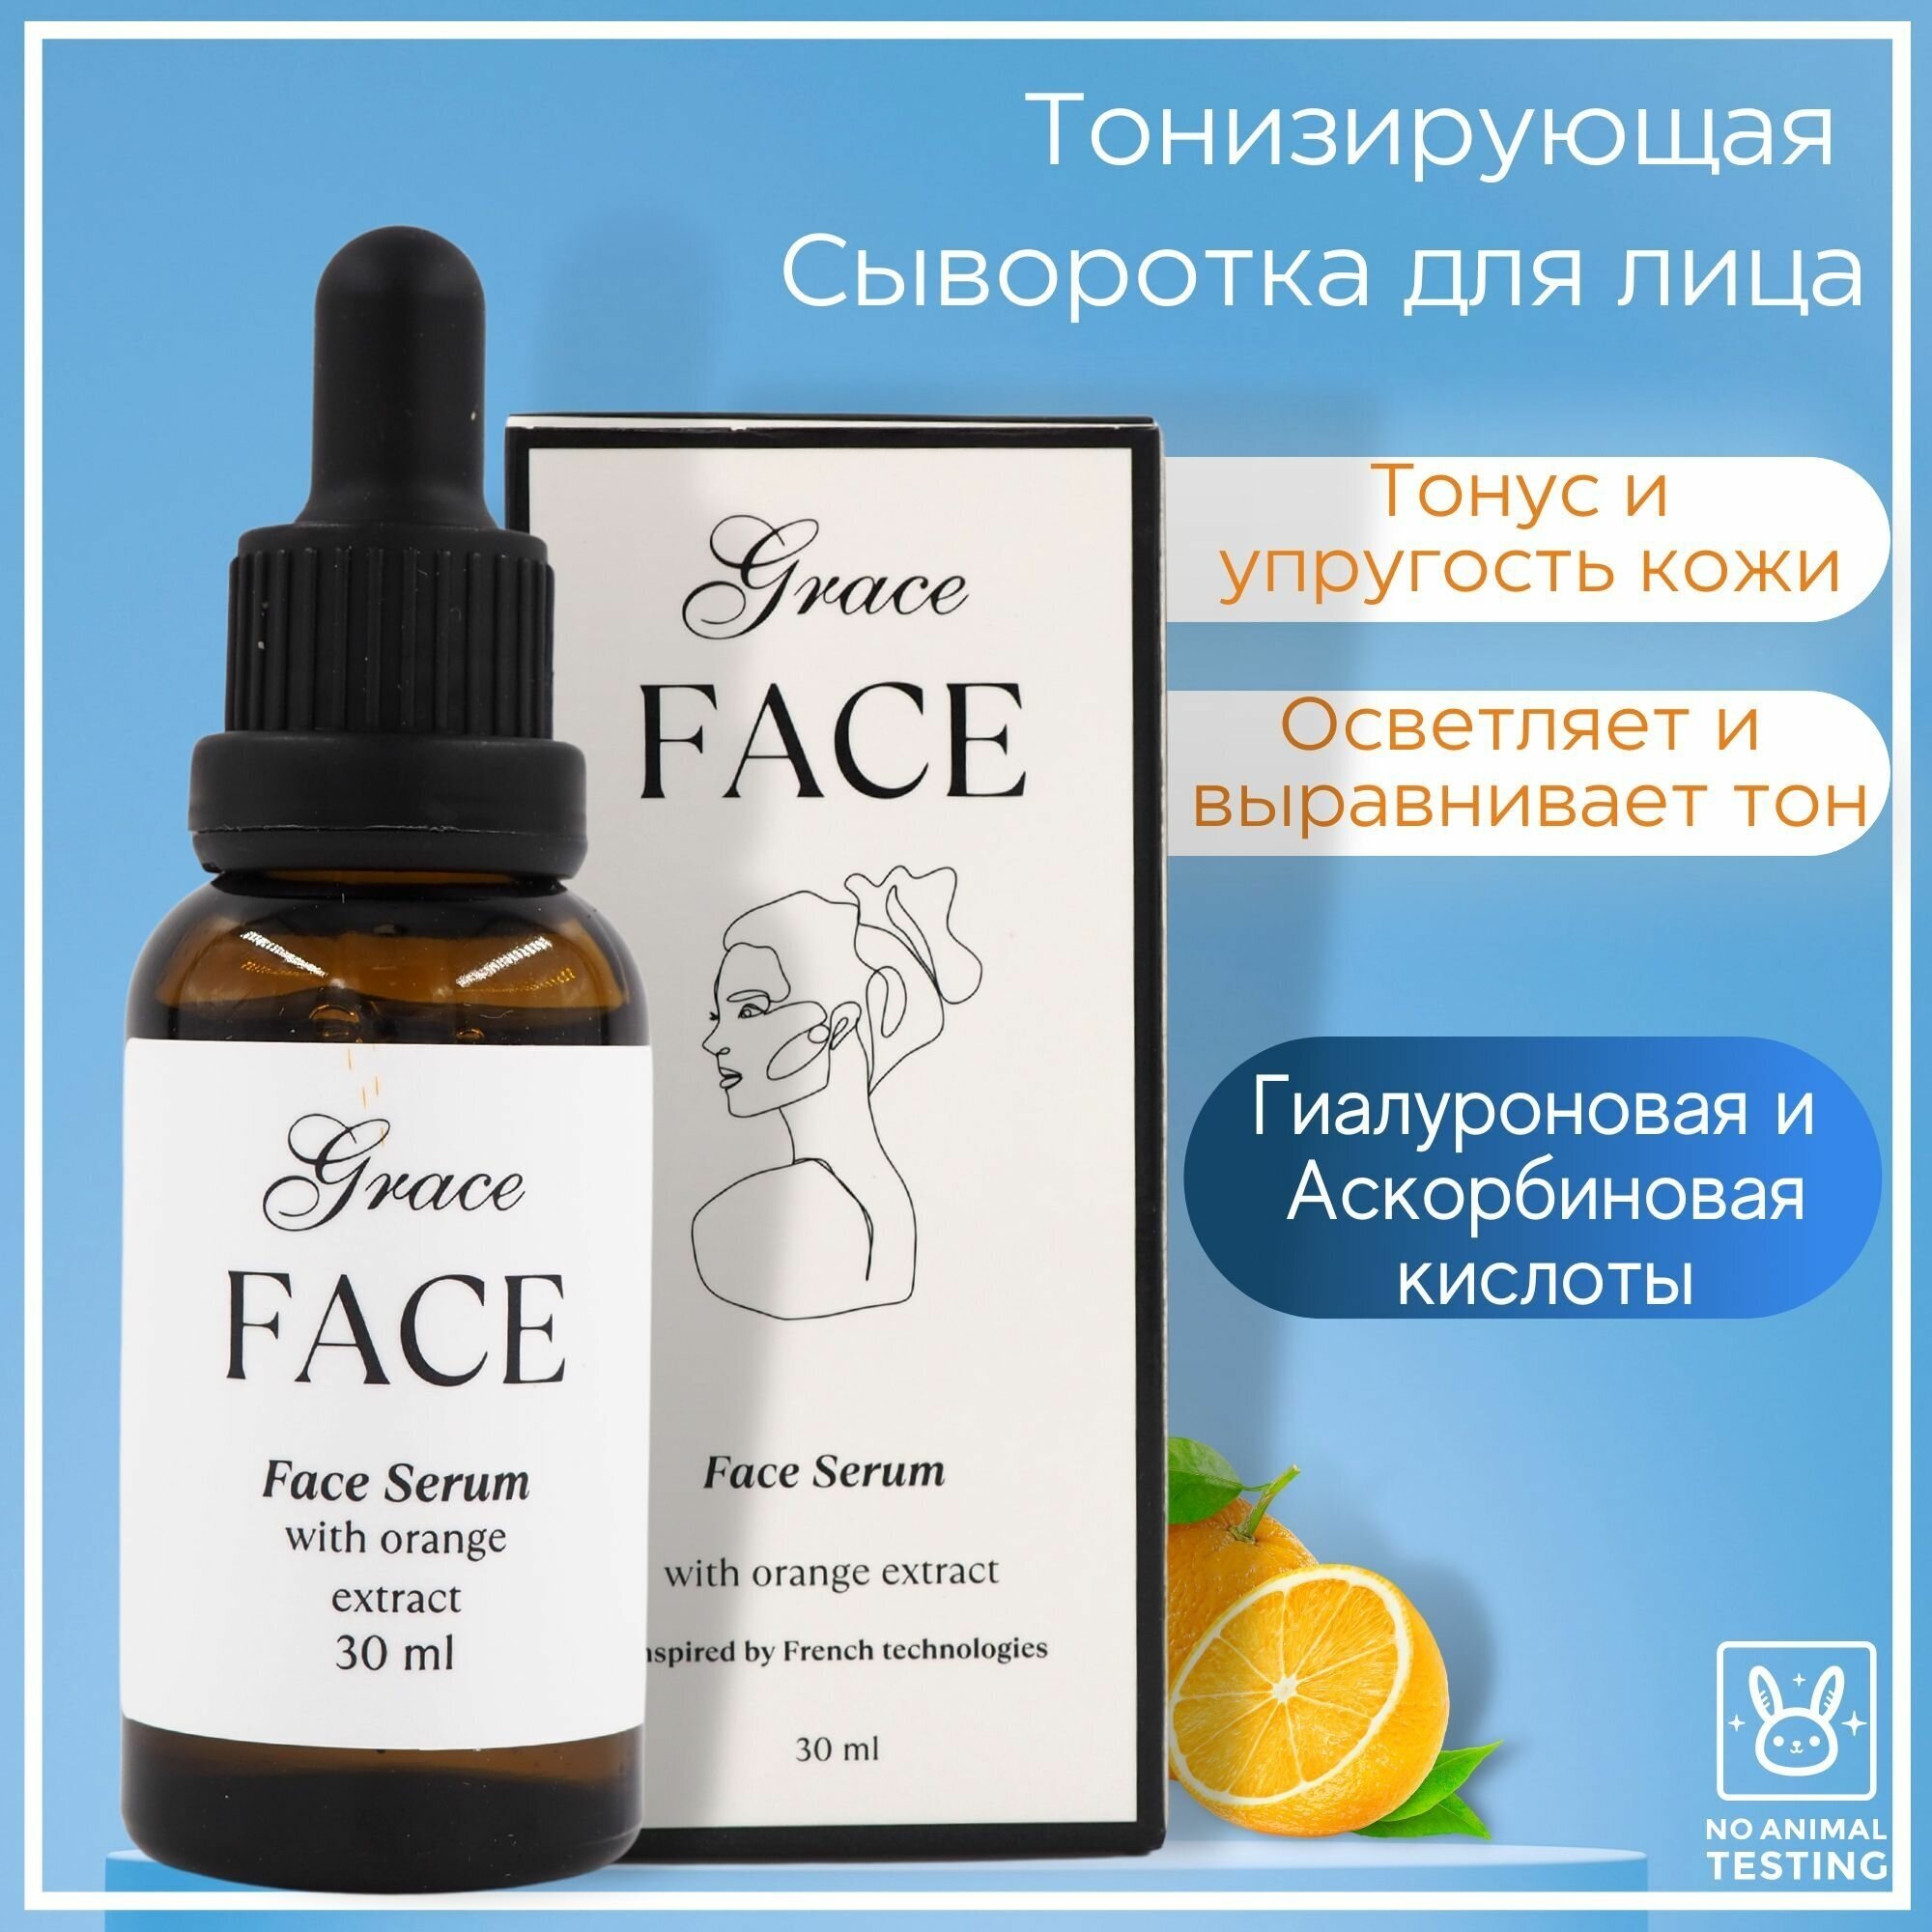 Тонизирующая и увлажняющая сыворотка для лица Grace FACE с экстрактом апельсина 30мл